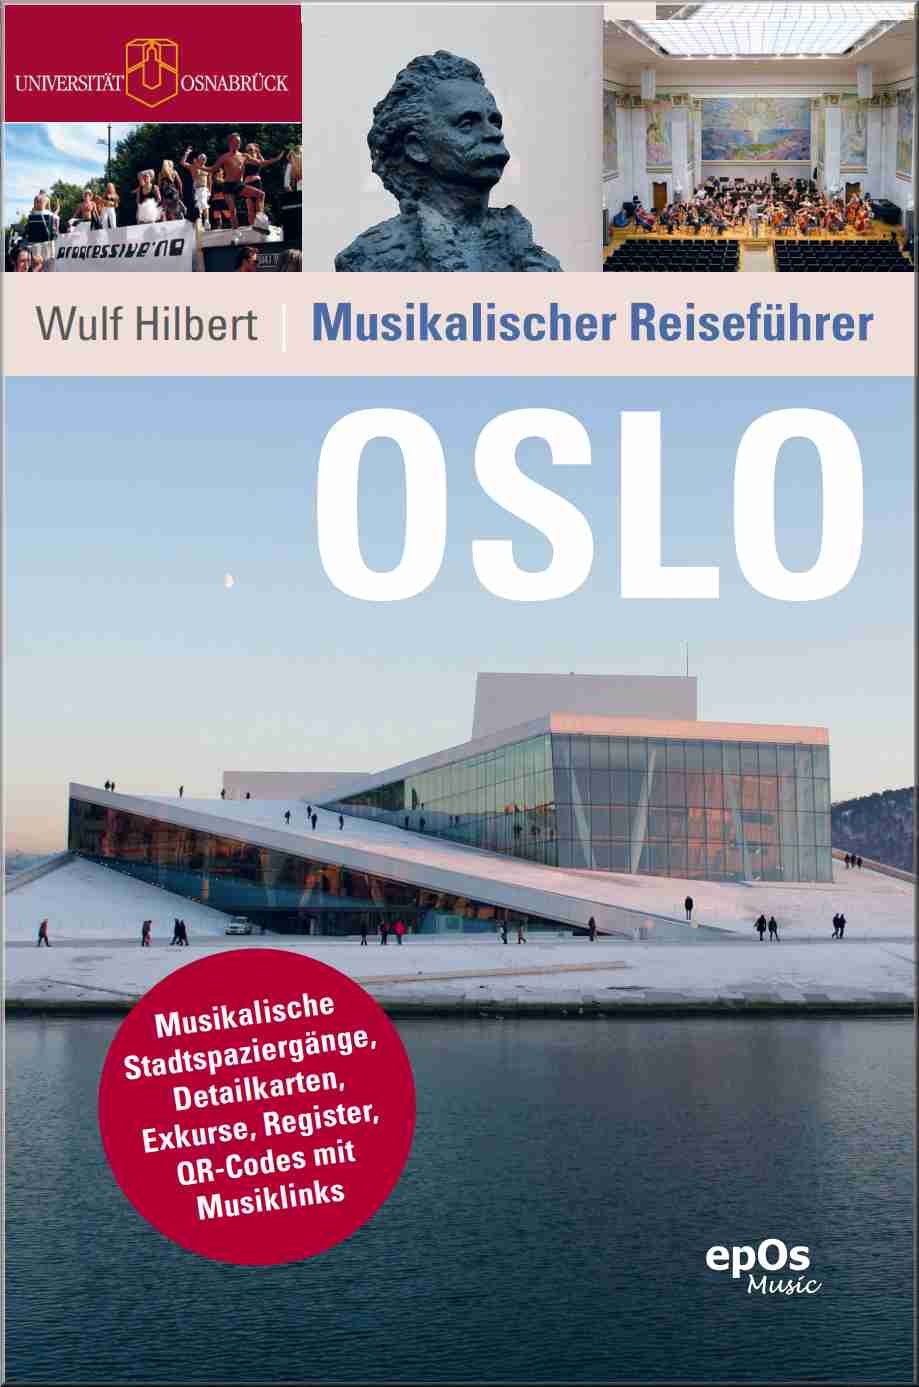 Wulf Hilbert, Musikalischer Reiseführer - Oslo